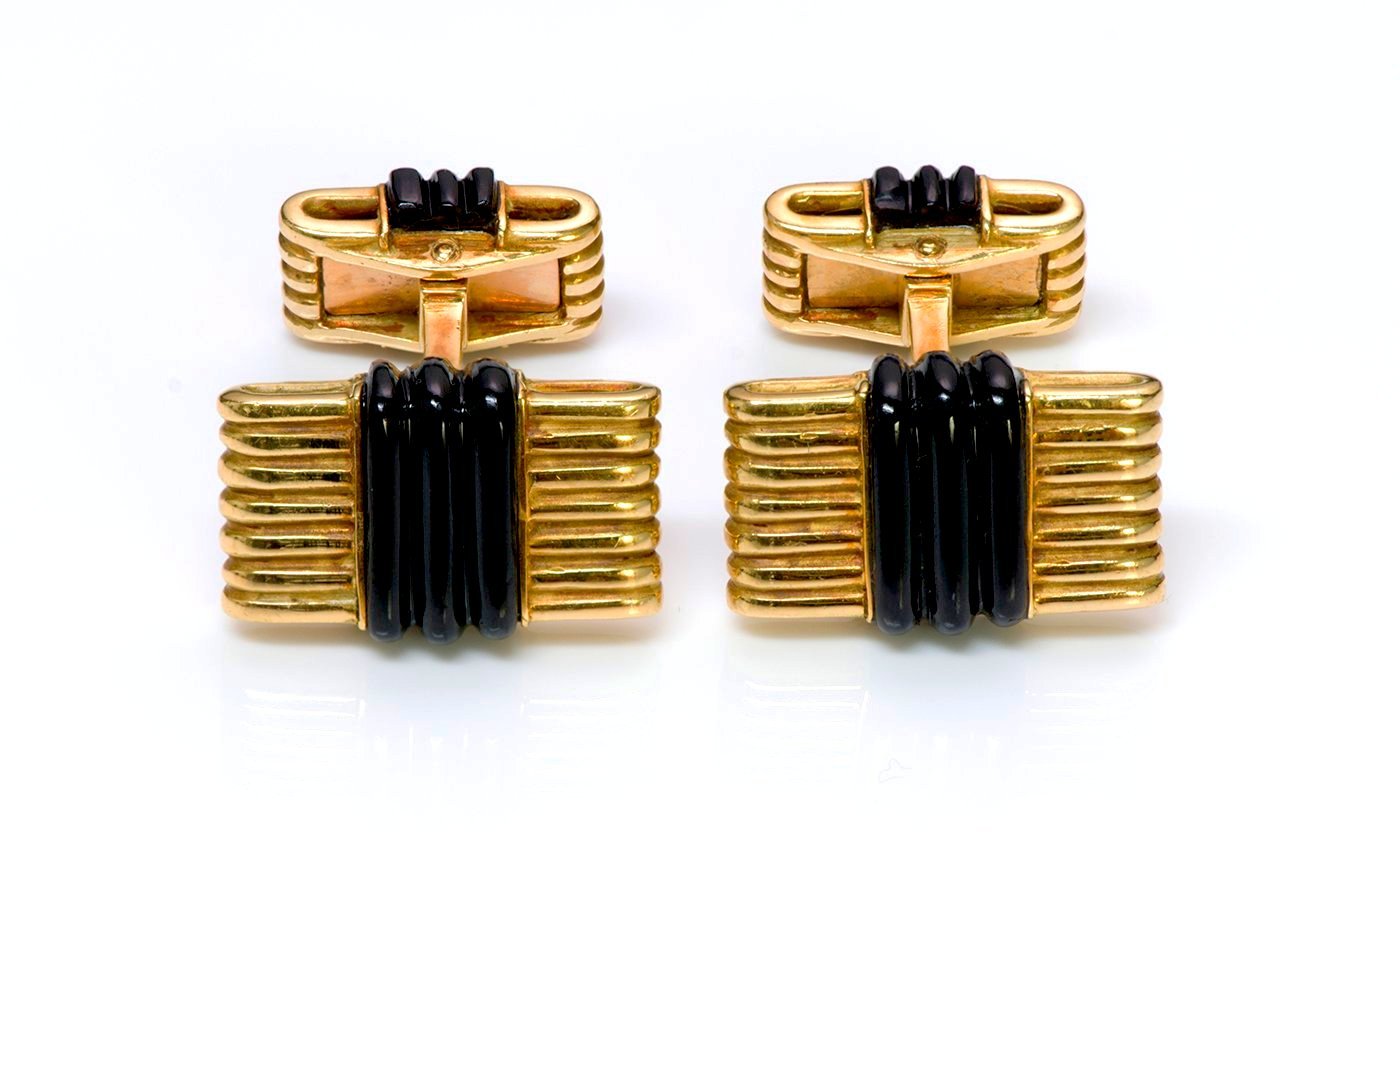 Tiffany & Co. France Gold Onyx Cufflinks